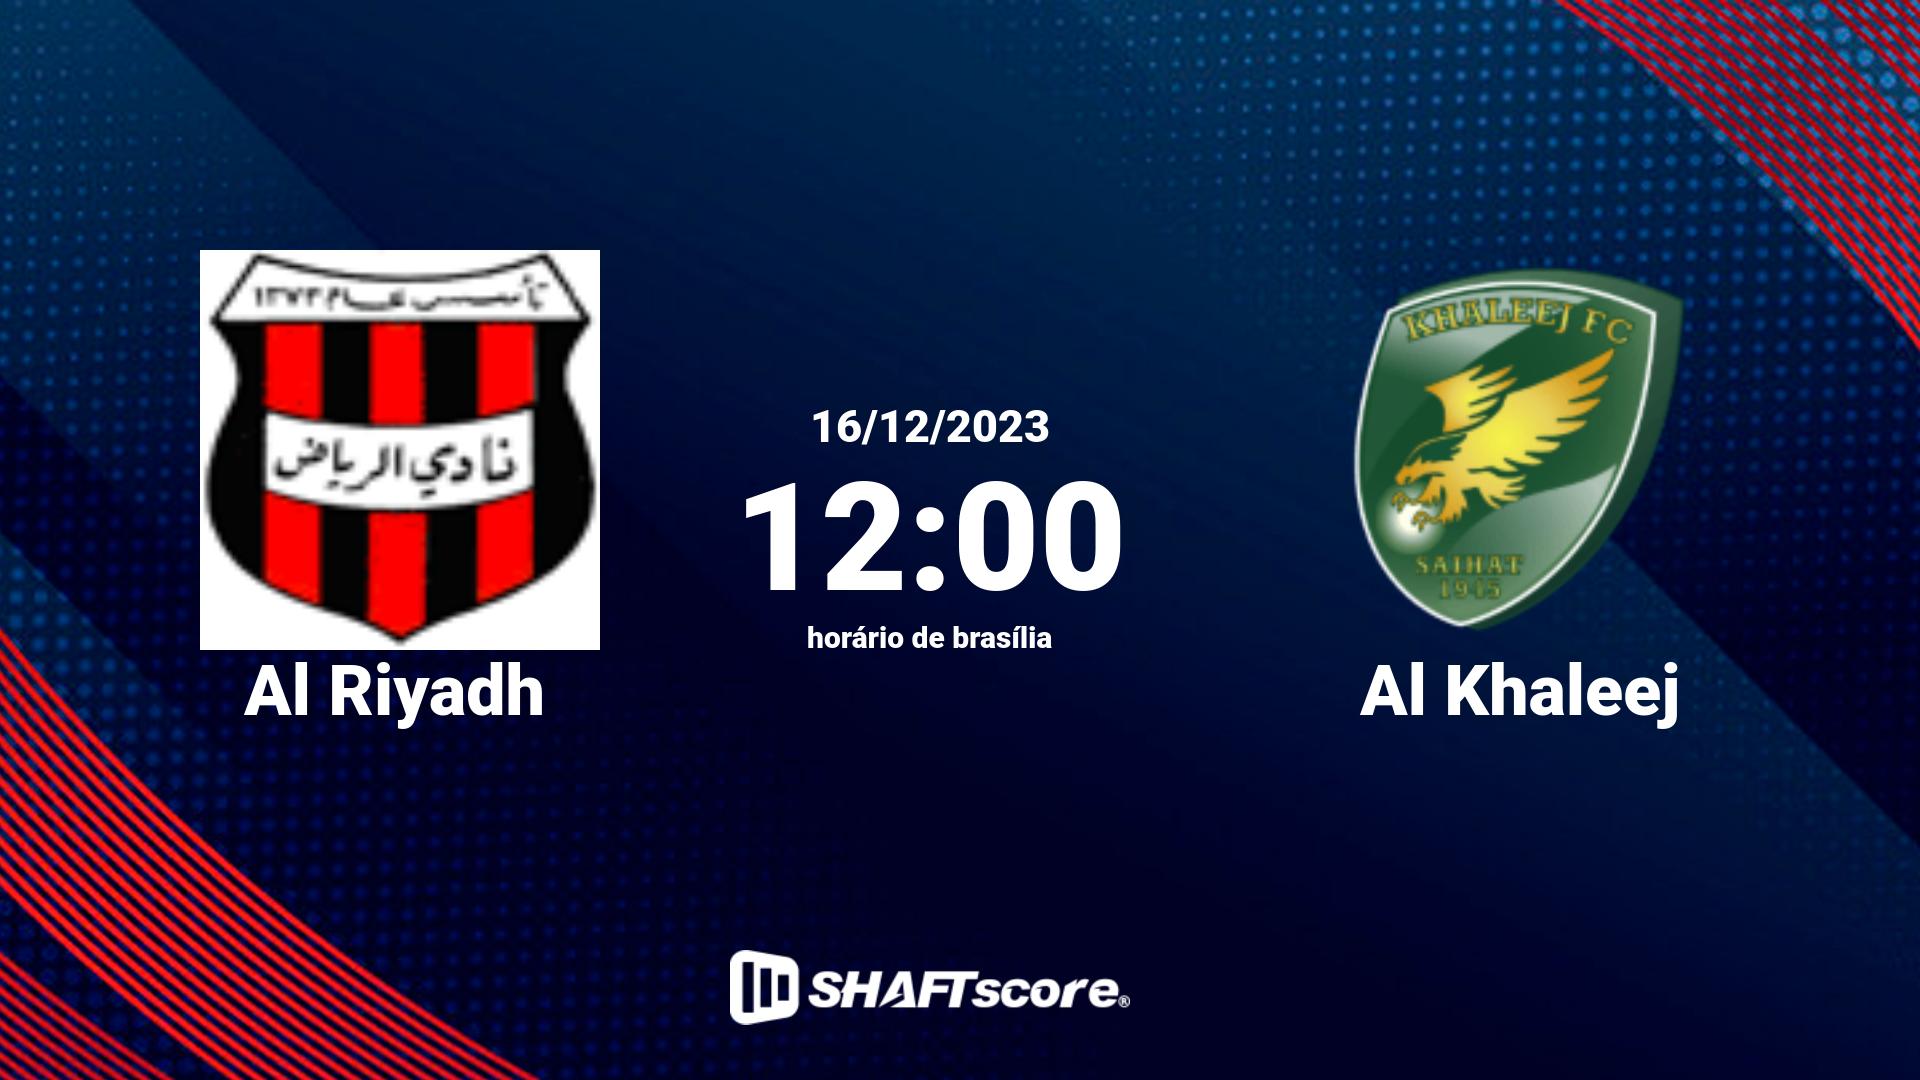 Estatísticas do jogo Al Riyadh vs Al Khaleej 16.12 12:00